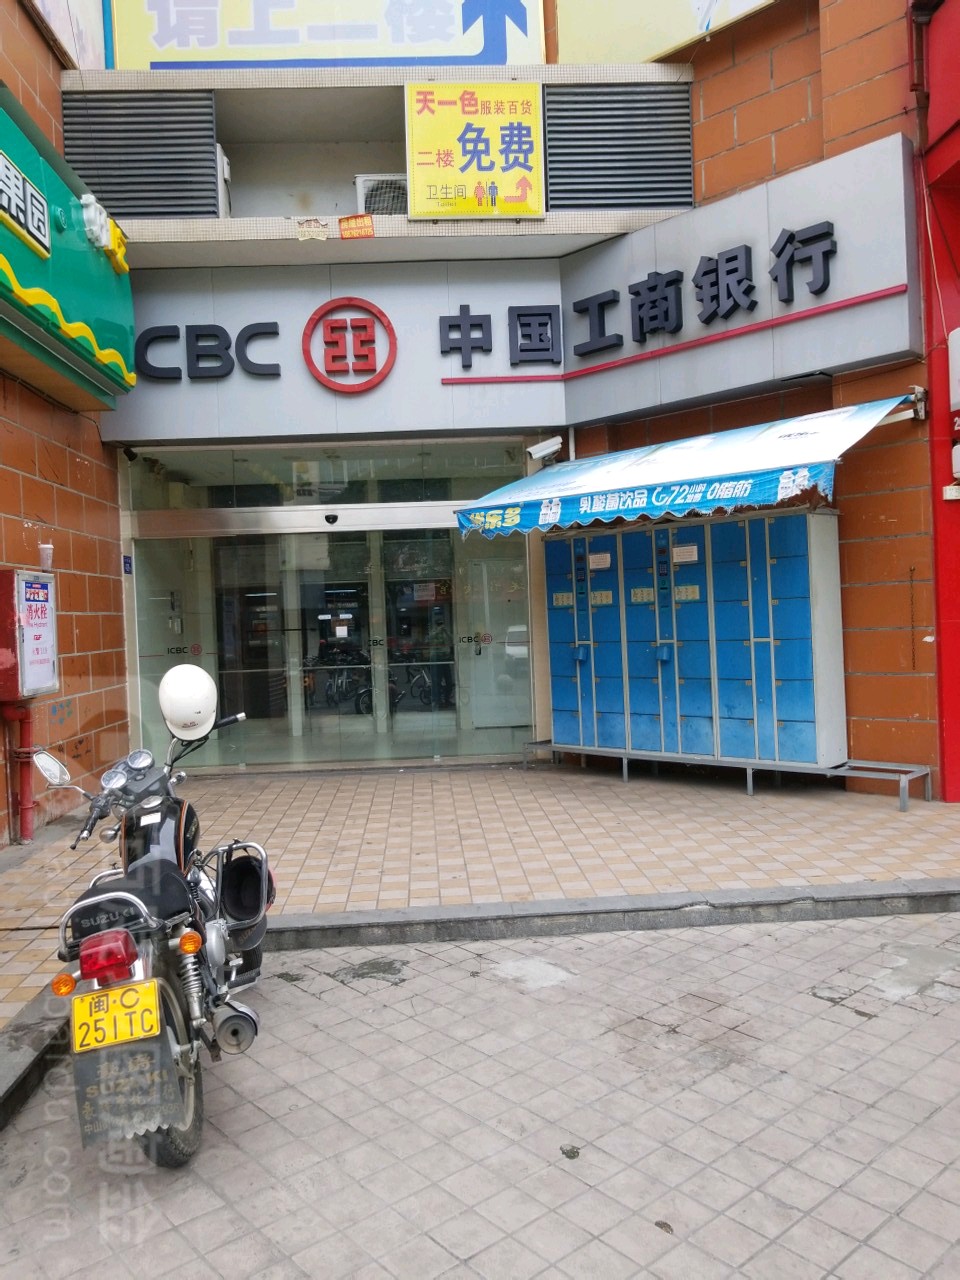 中國工商銀行24小時自助銀行(泉州分行鯉城區興賢路明光花園)